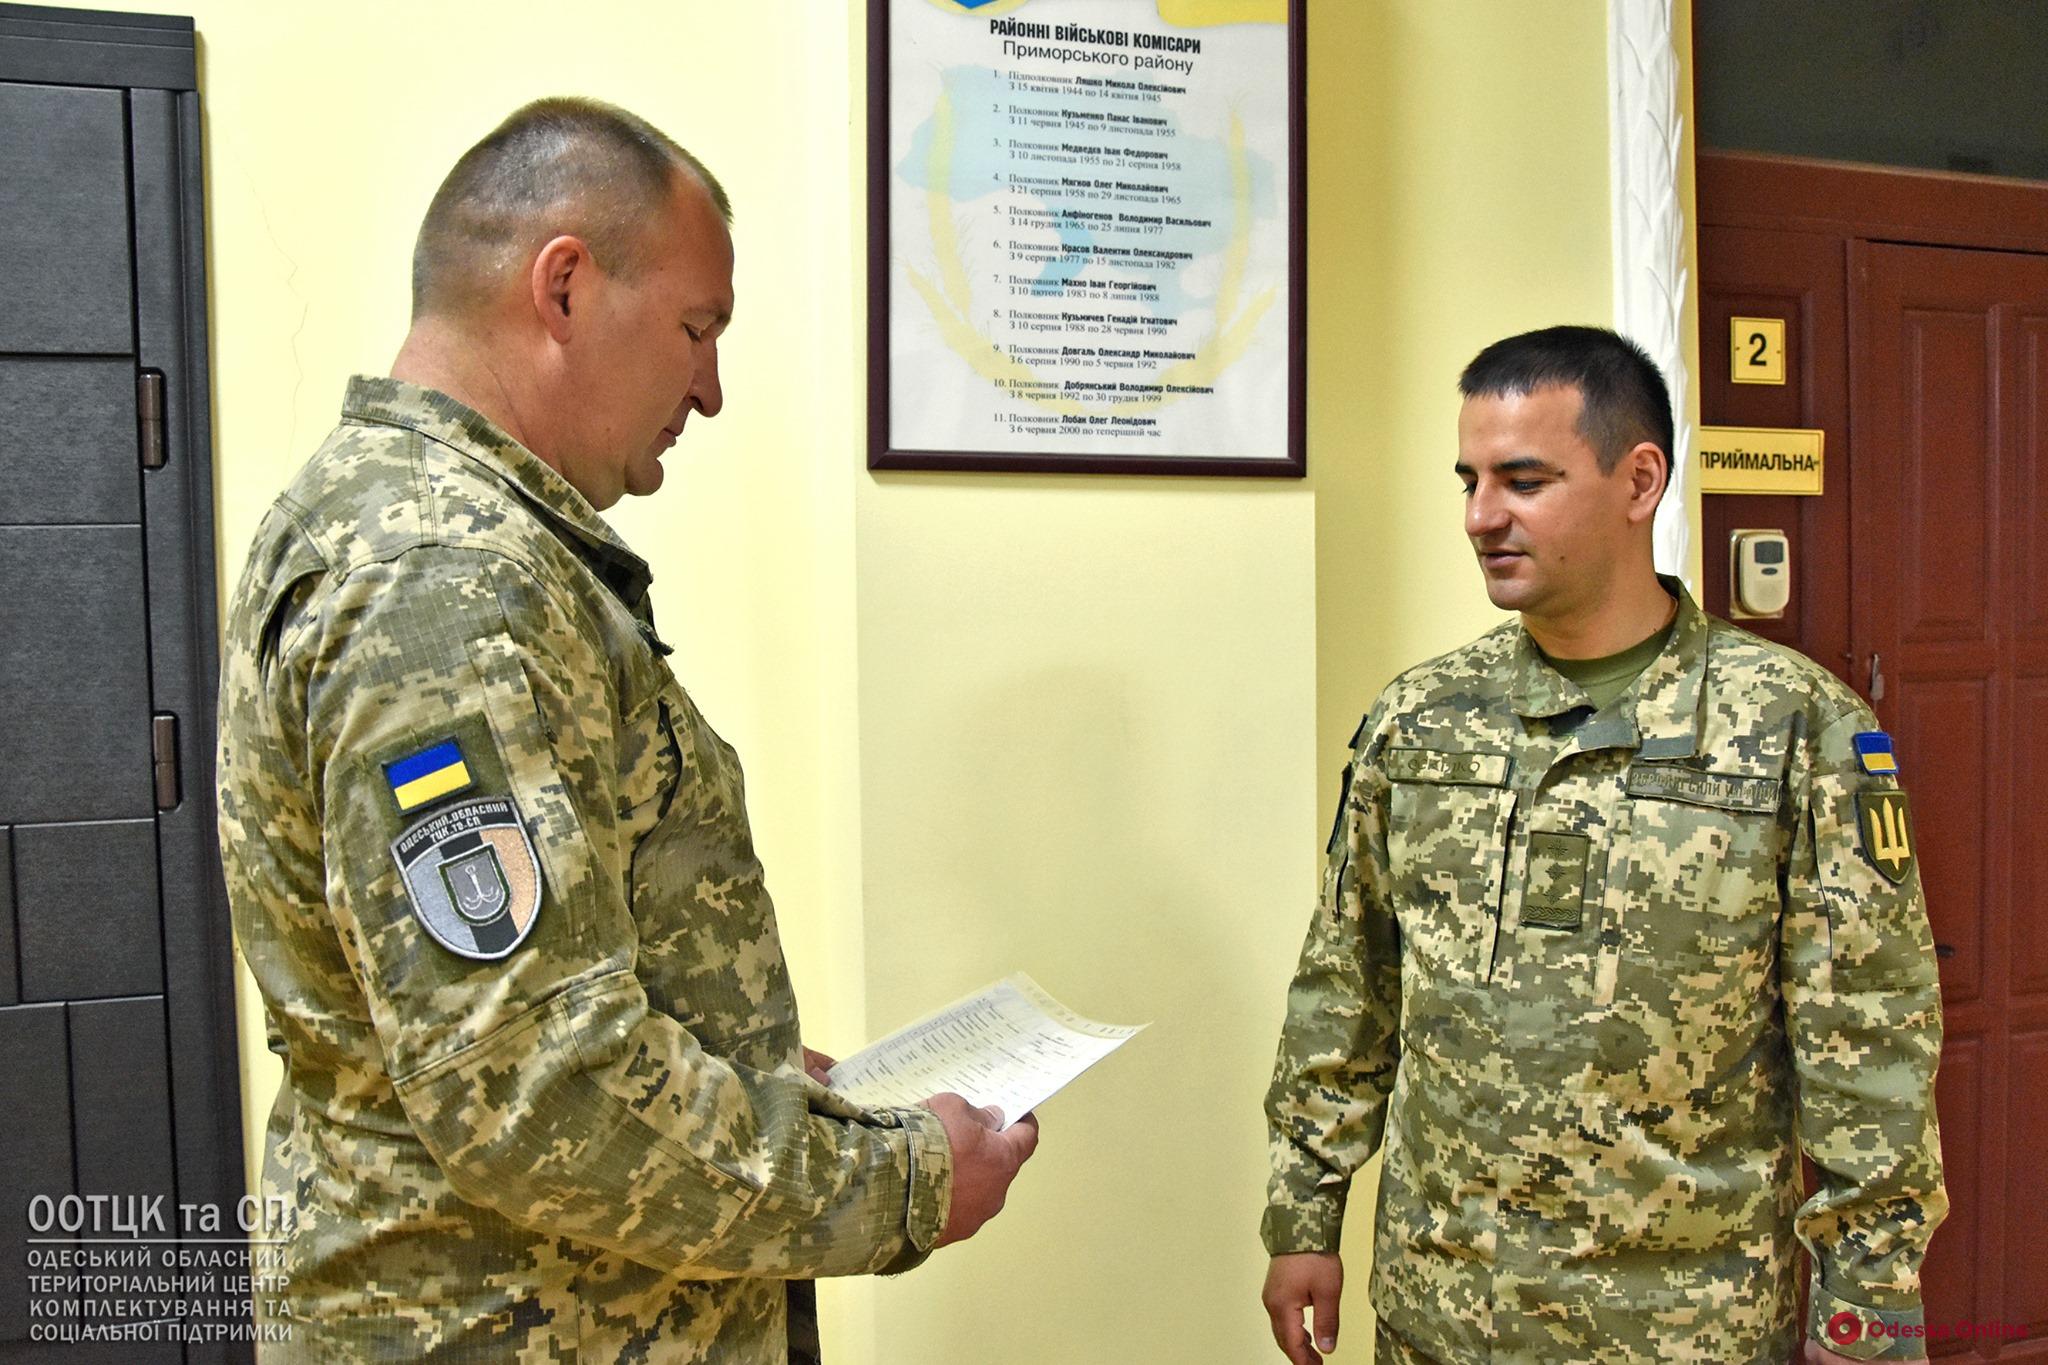 Назначен новый военный комиссар Приморского района